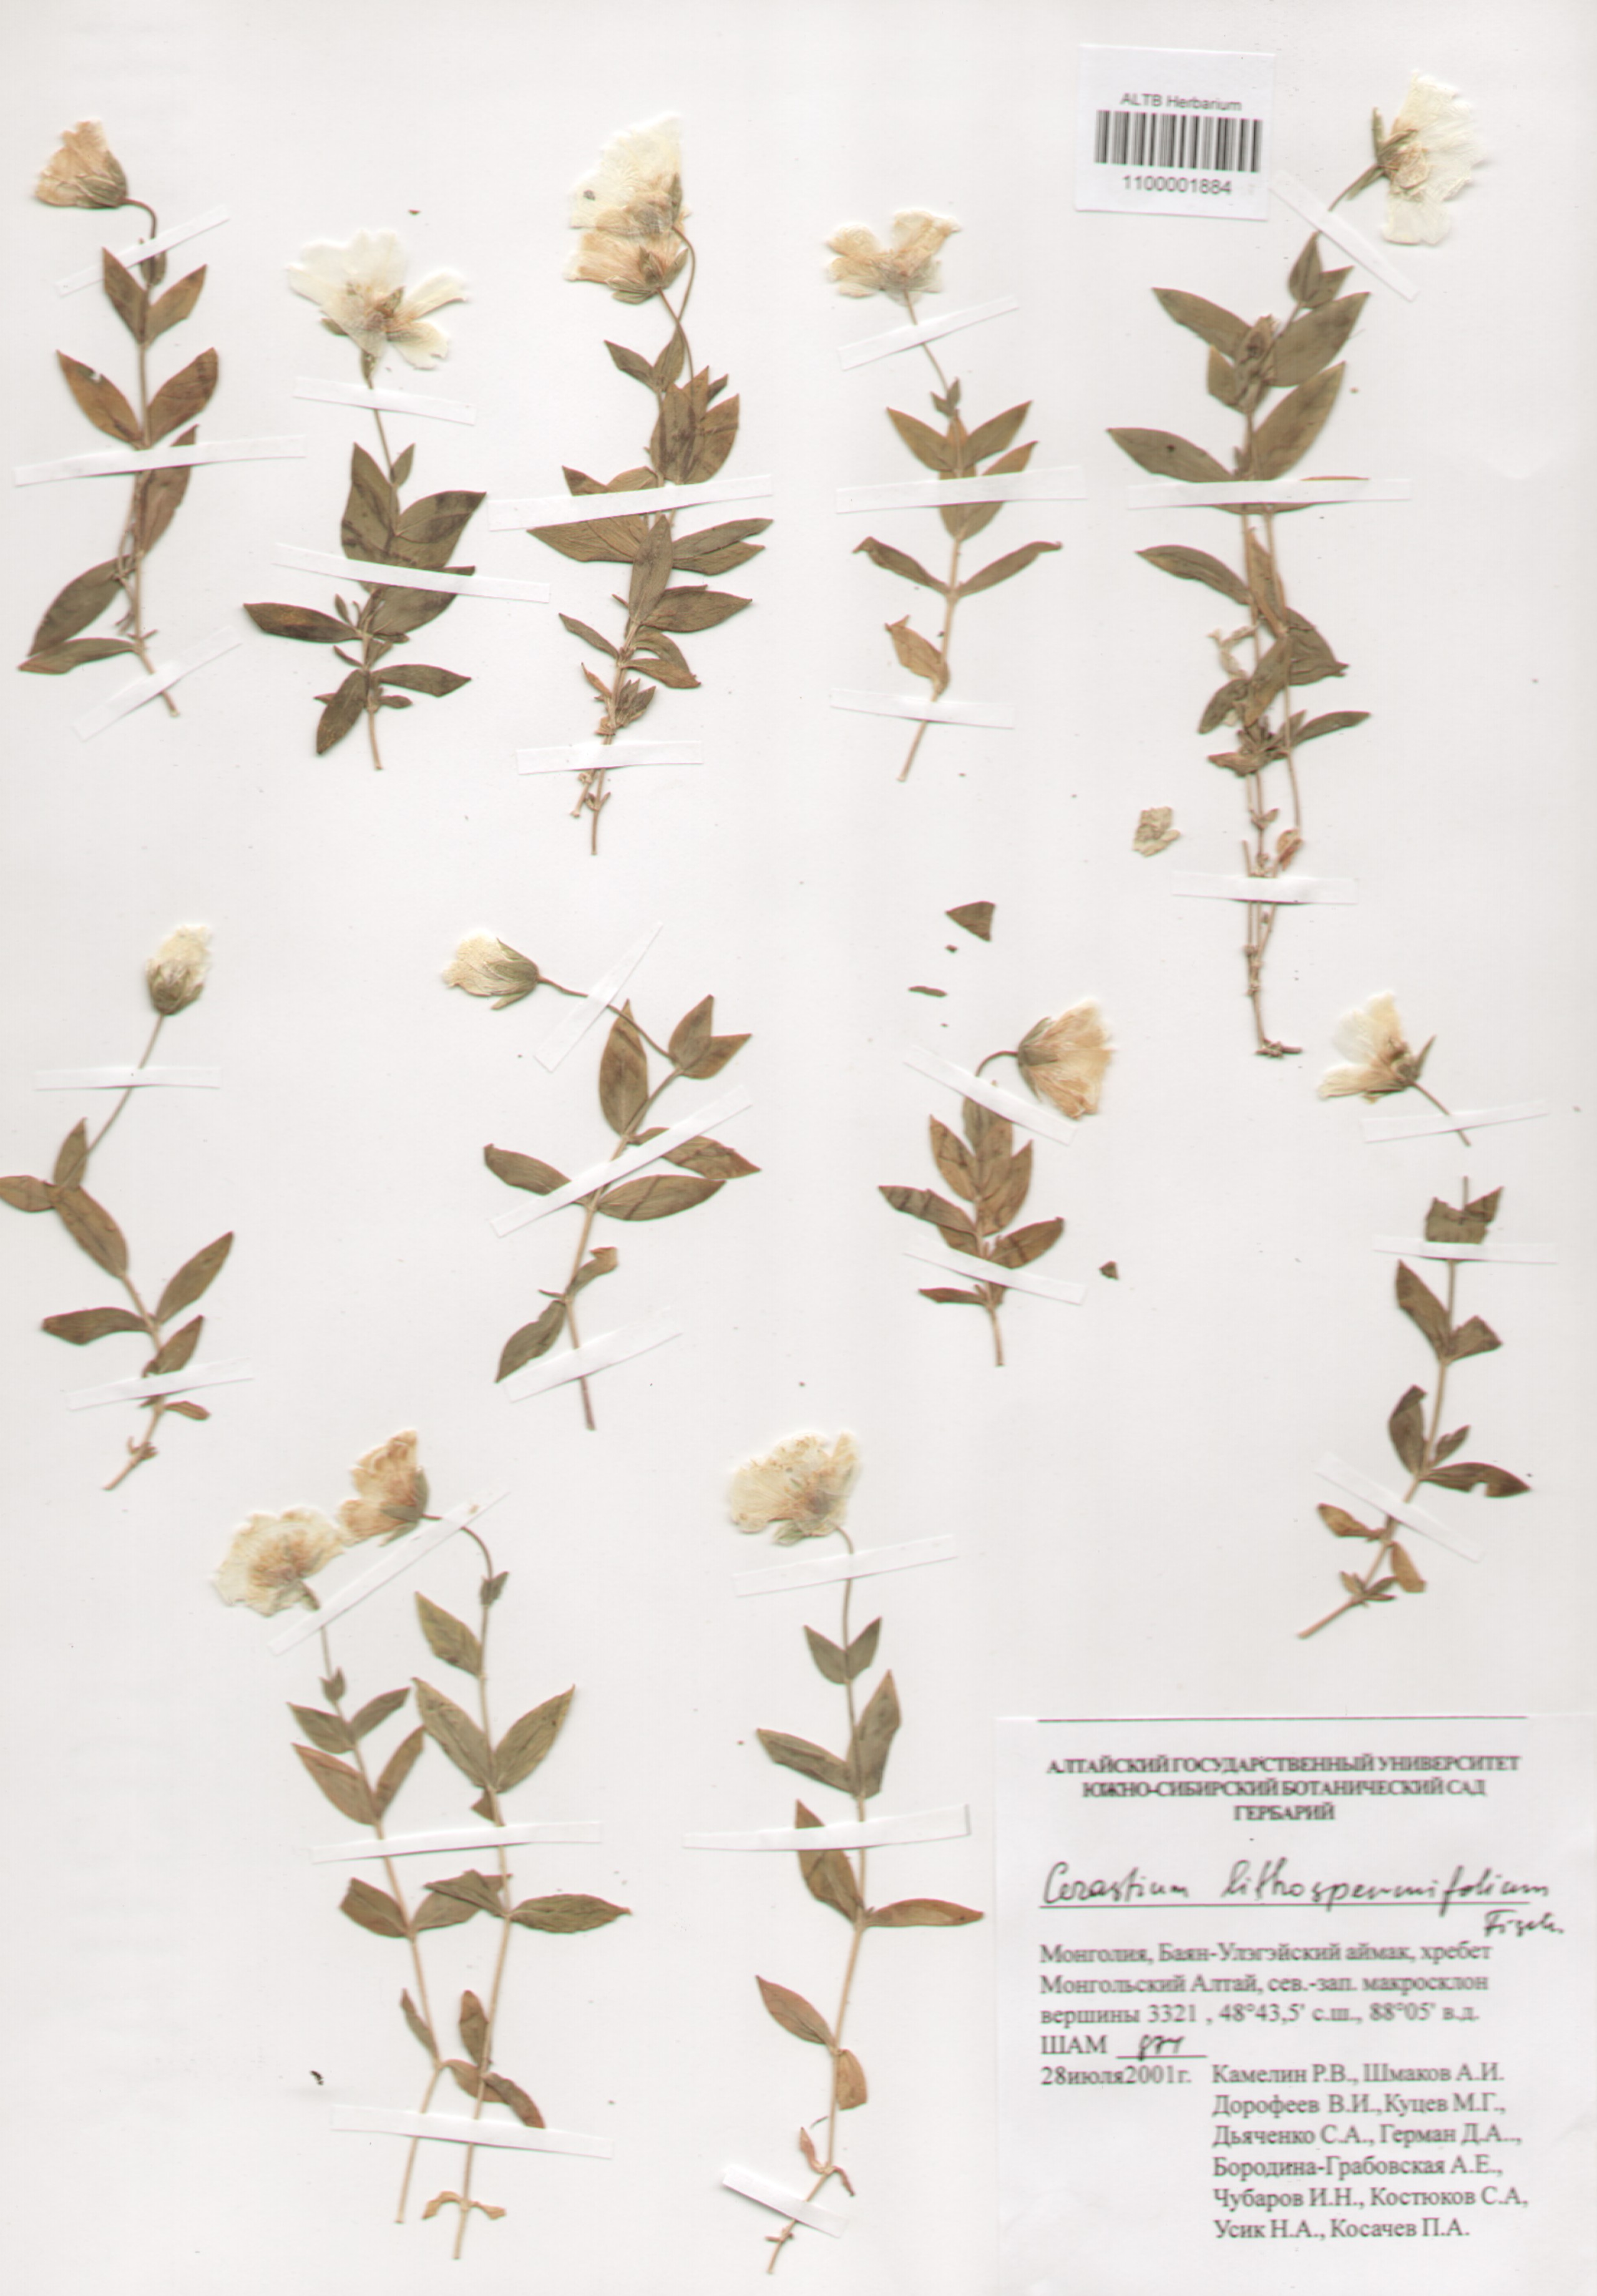 Caryophyllaceae,Cerastium litospermipholium Fisch.